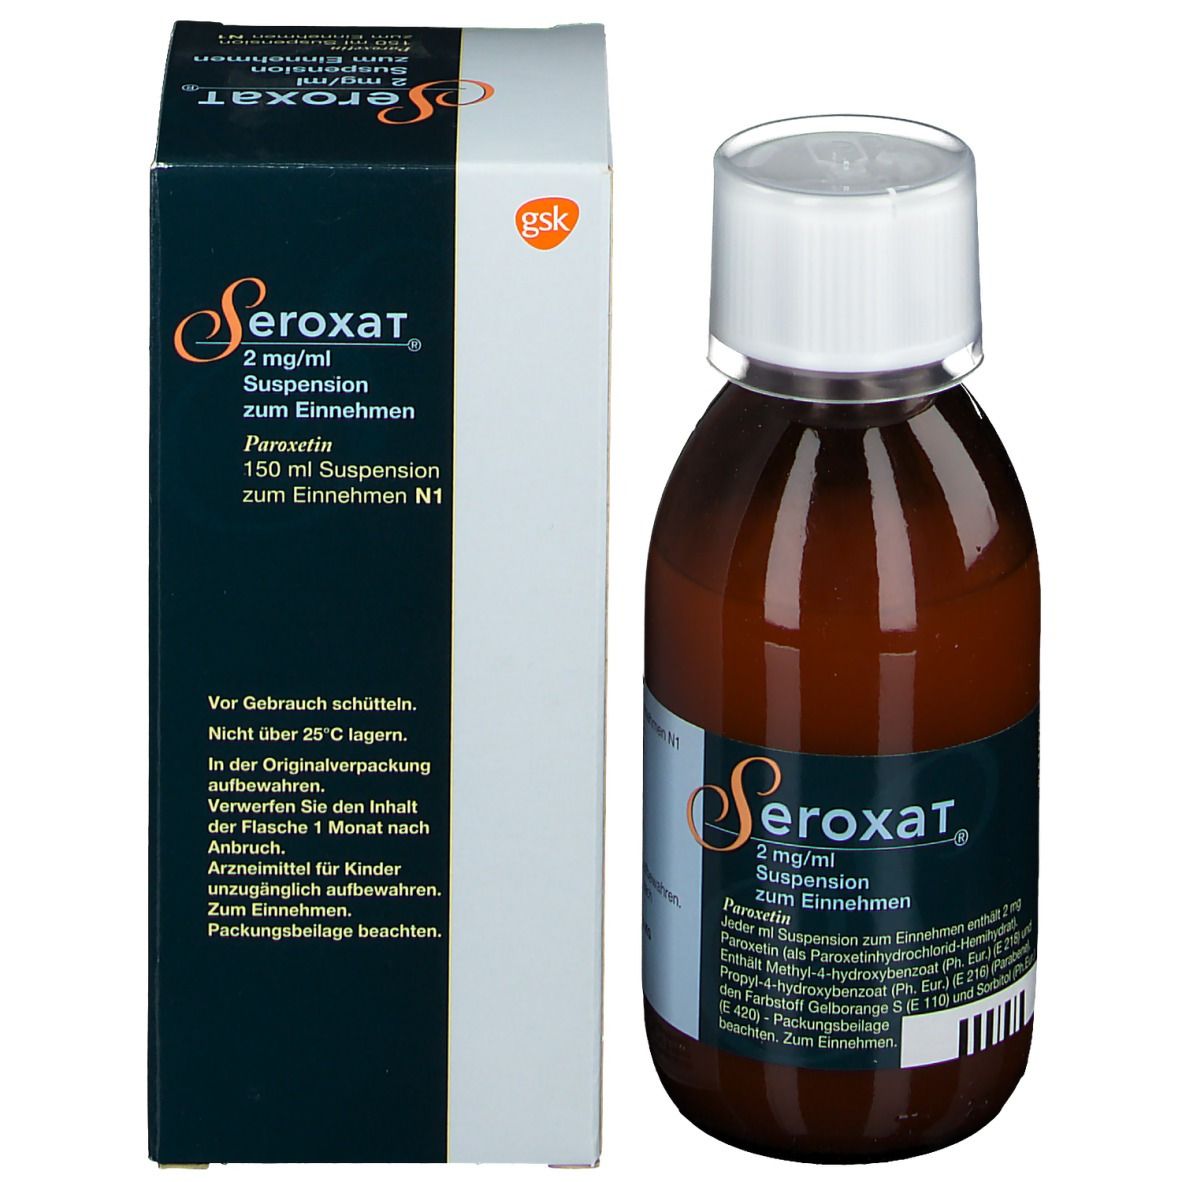 Seroxat® 2 mg/ml